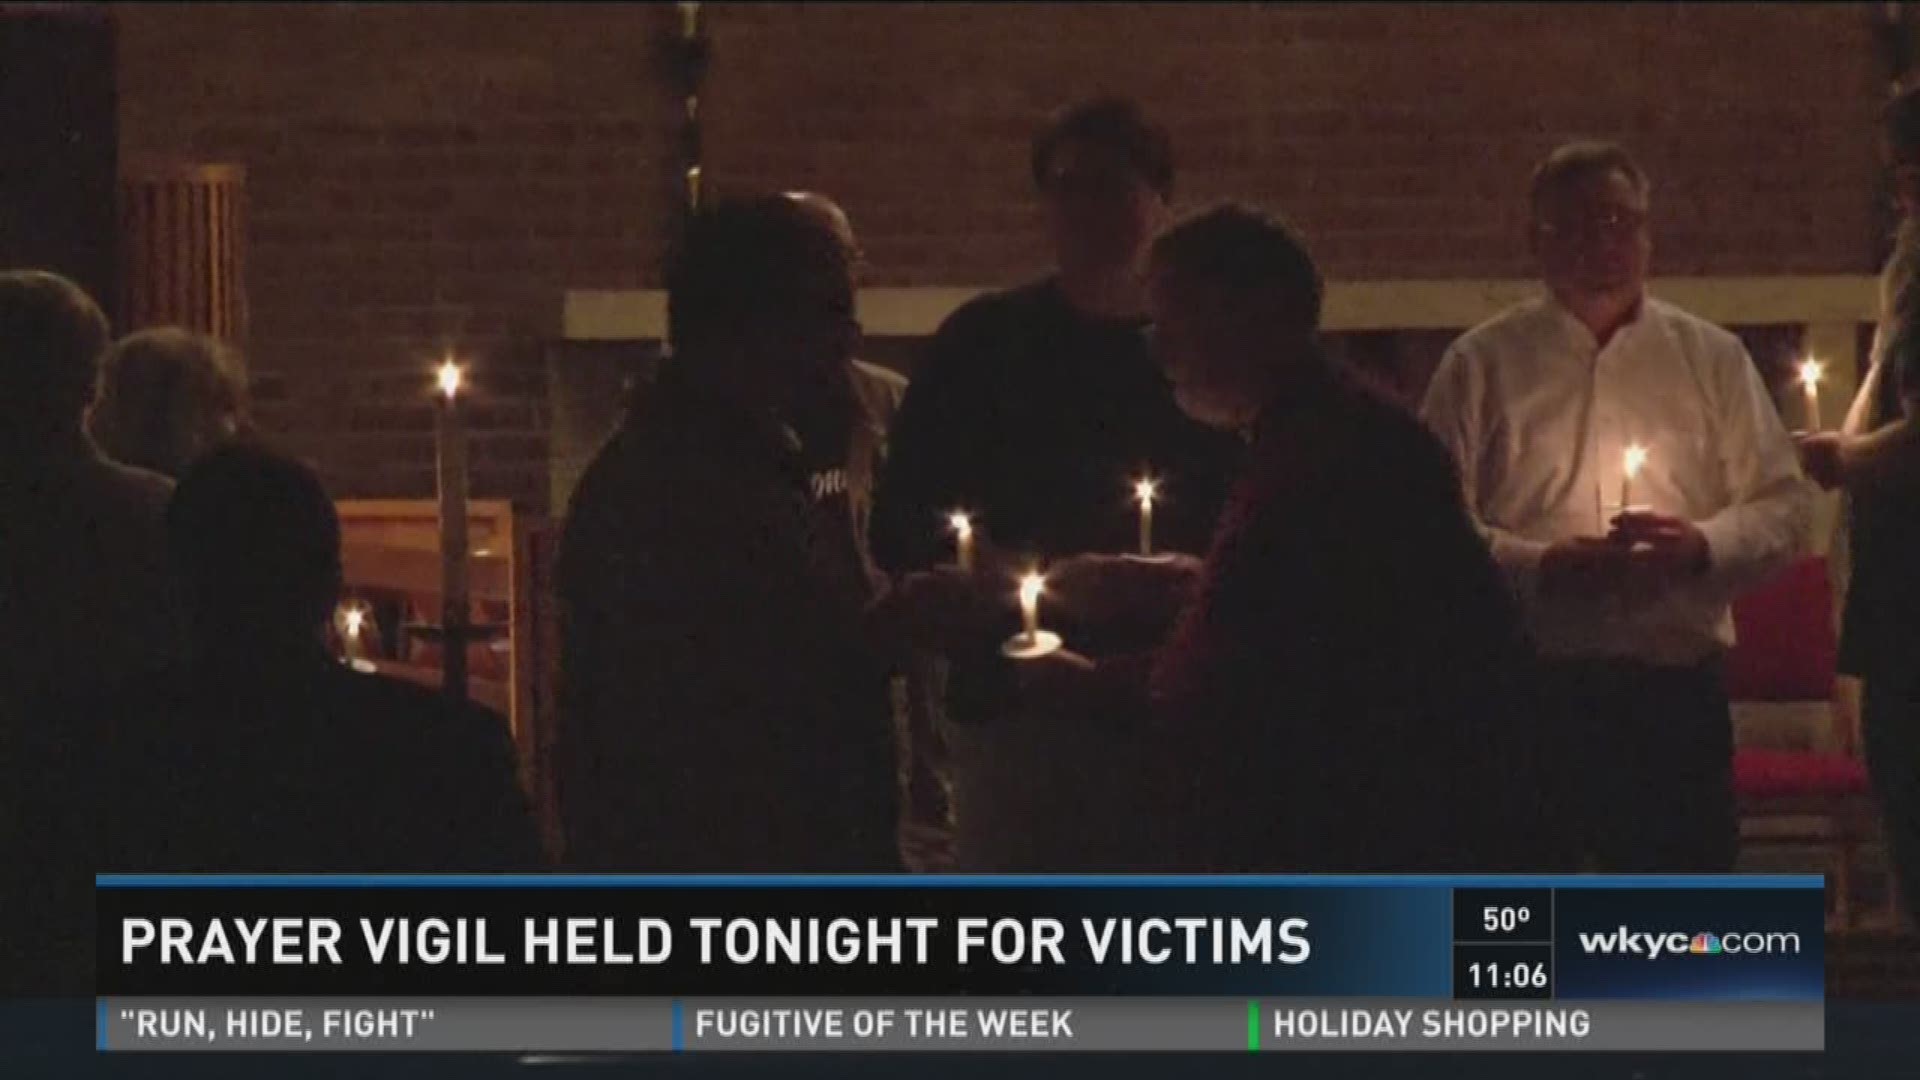 Prayer vigil held tonight for victims